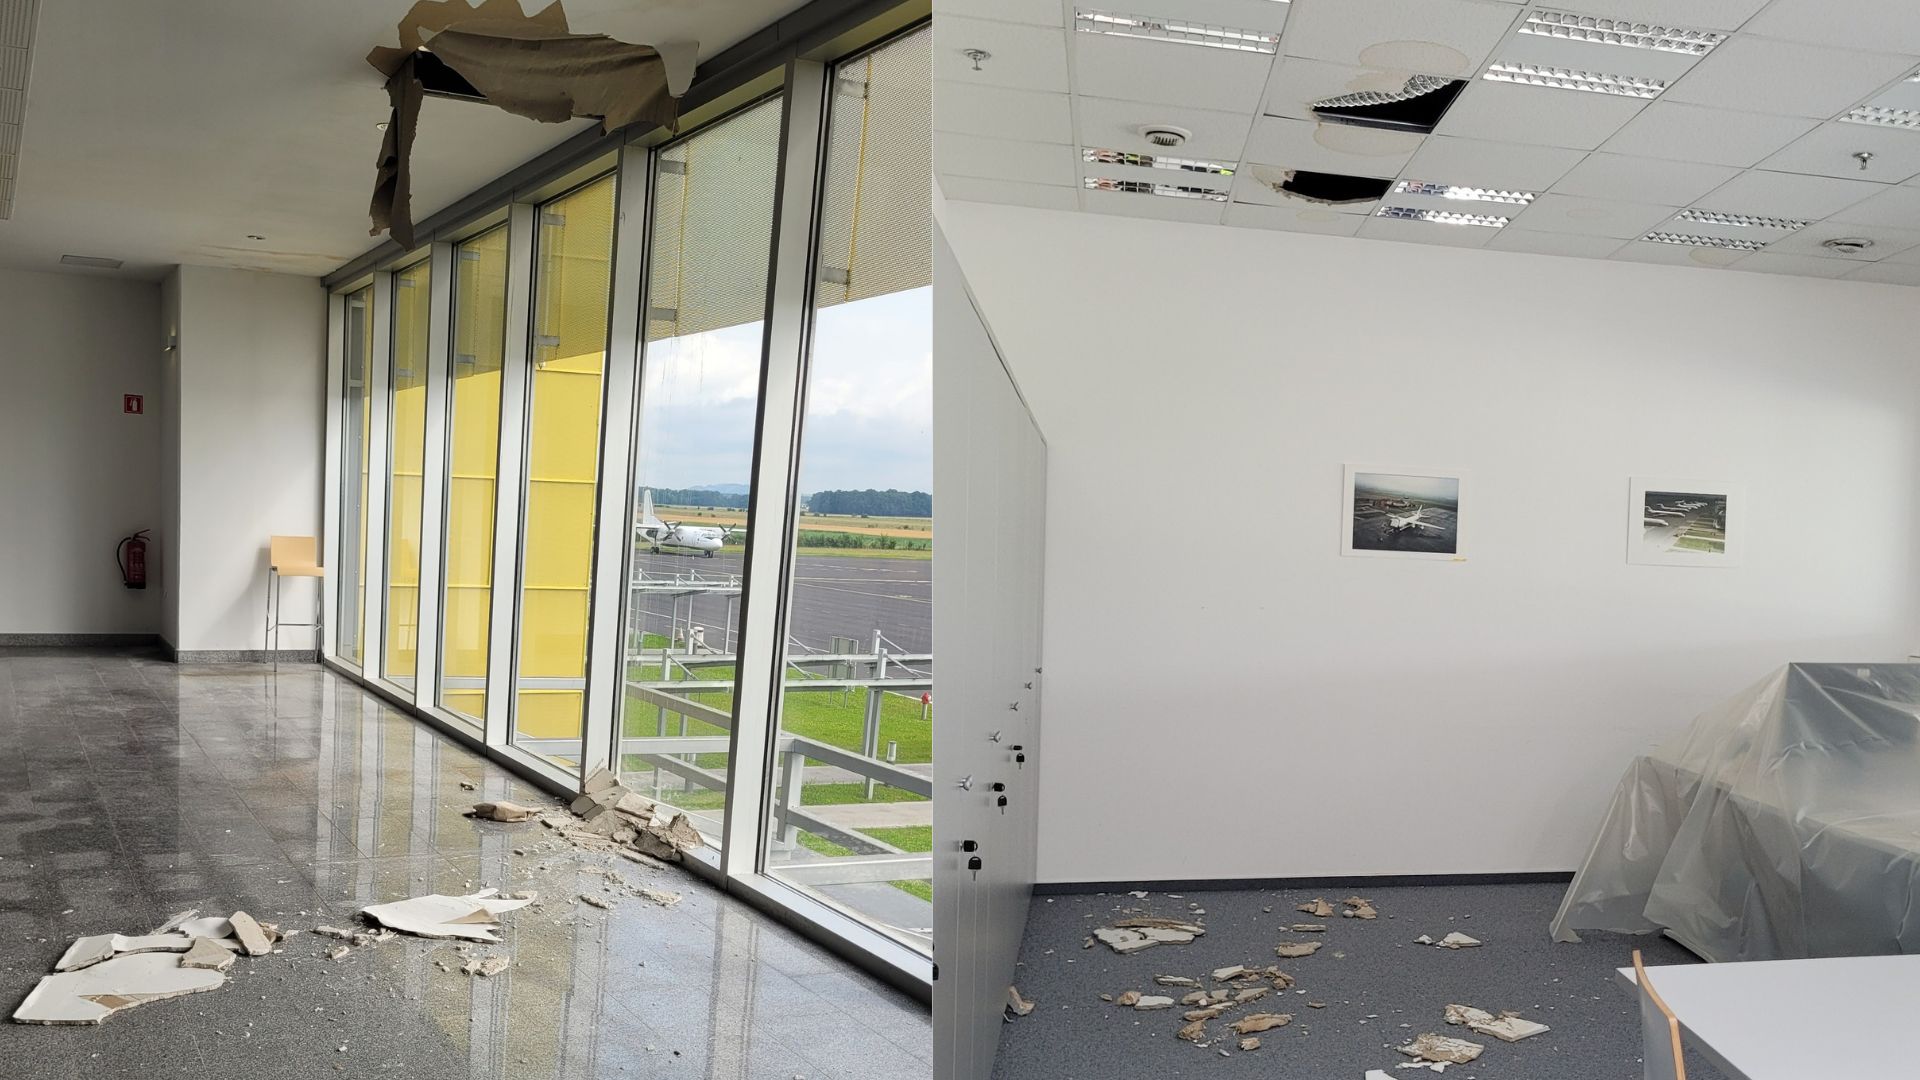 Toča povzročila ogromno škodo na mariborskem letališču: Kaj pravijo na ministrstvu?